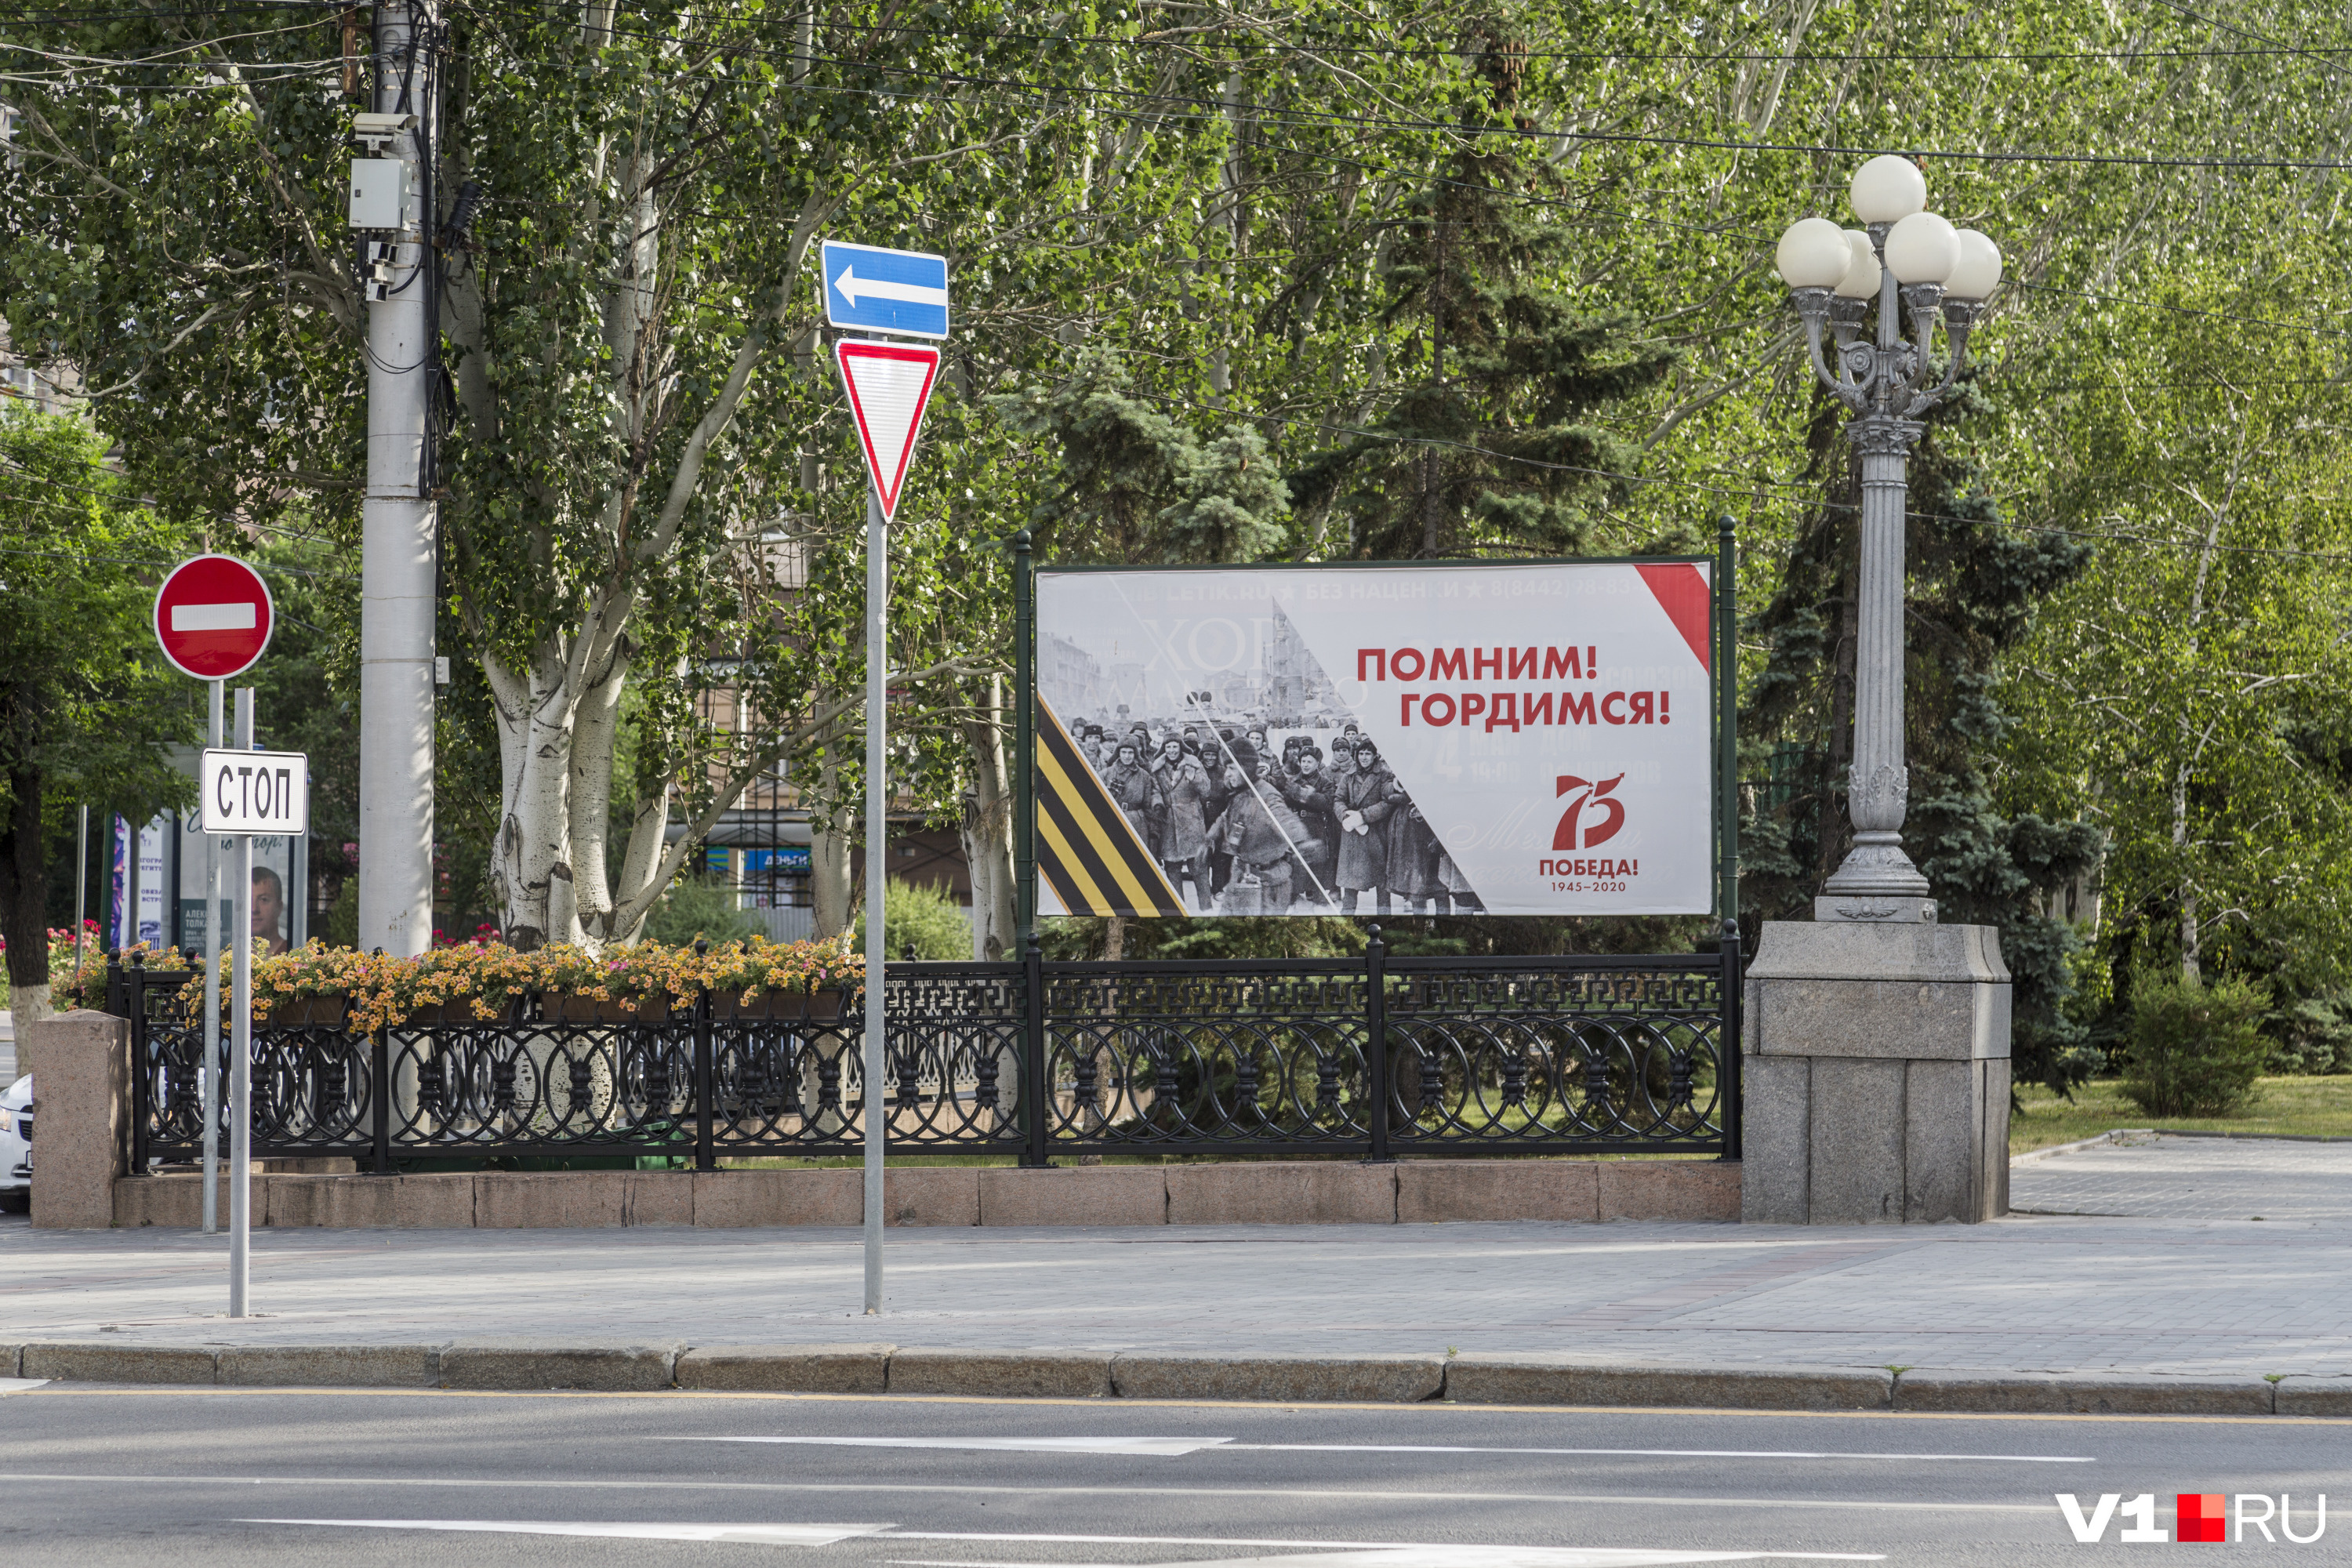 Комсомольцы Сталинграда смотрят прямо на плакат с надписью "Помним, гордимся".